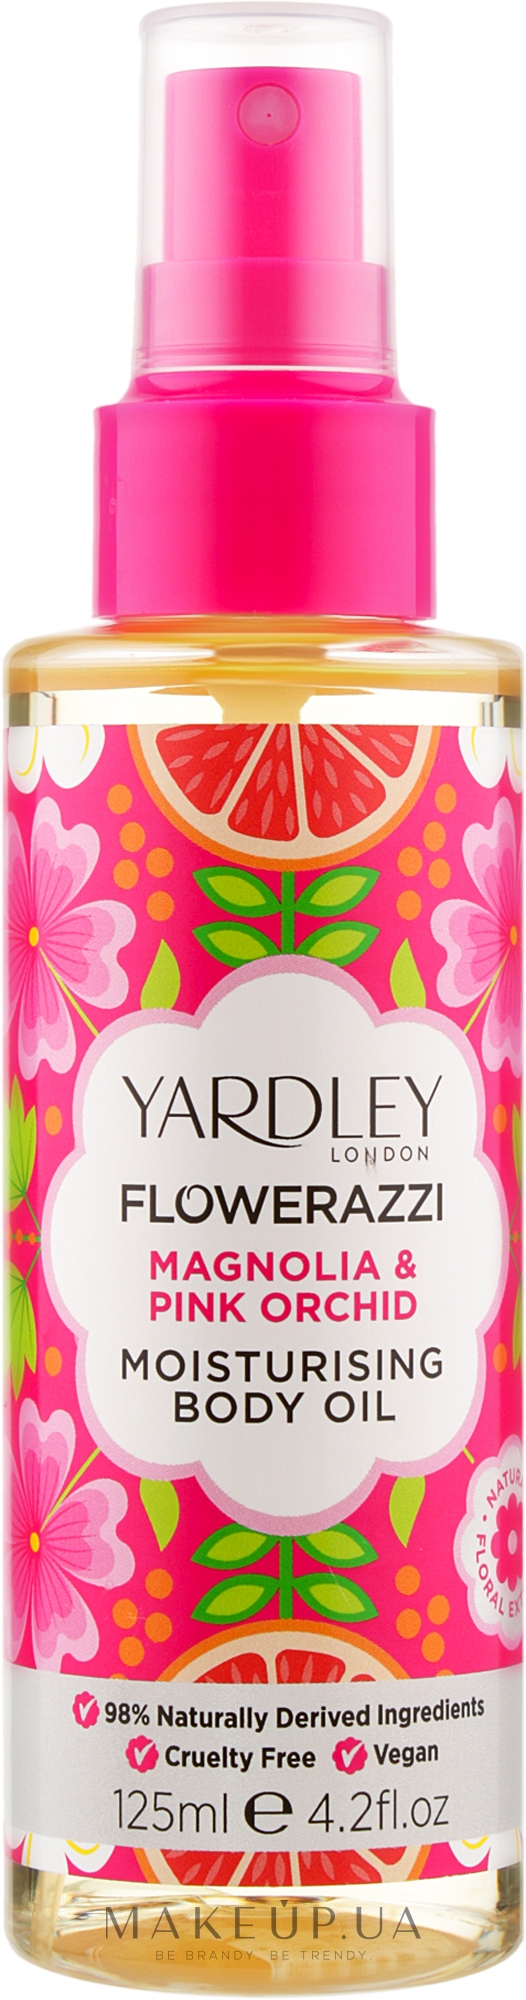 Зволожувальна олія для тіла - Yardley Flowerazzi Magnolia & Pink Orchid Moisturising Body Oil — фото 125ml